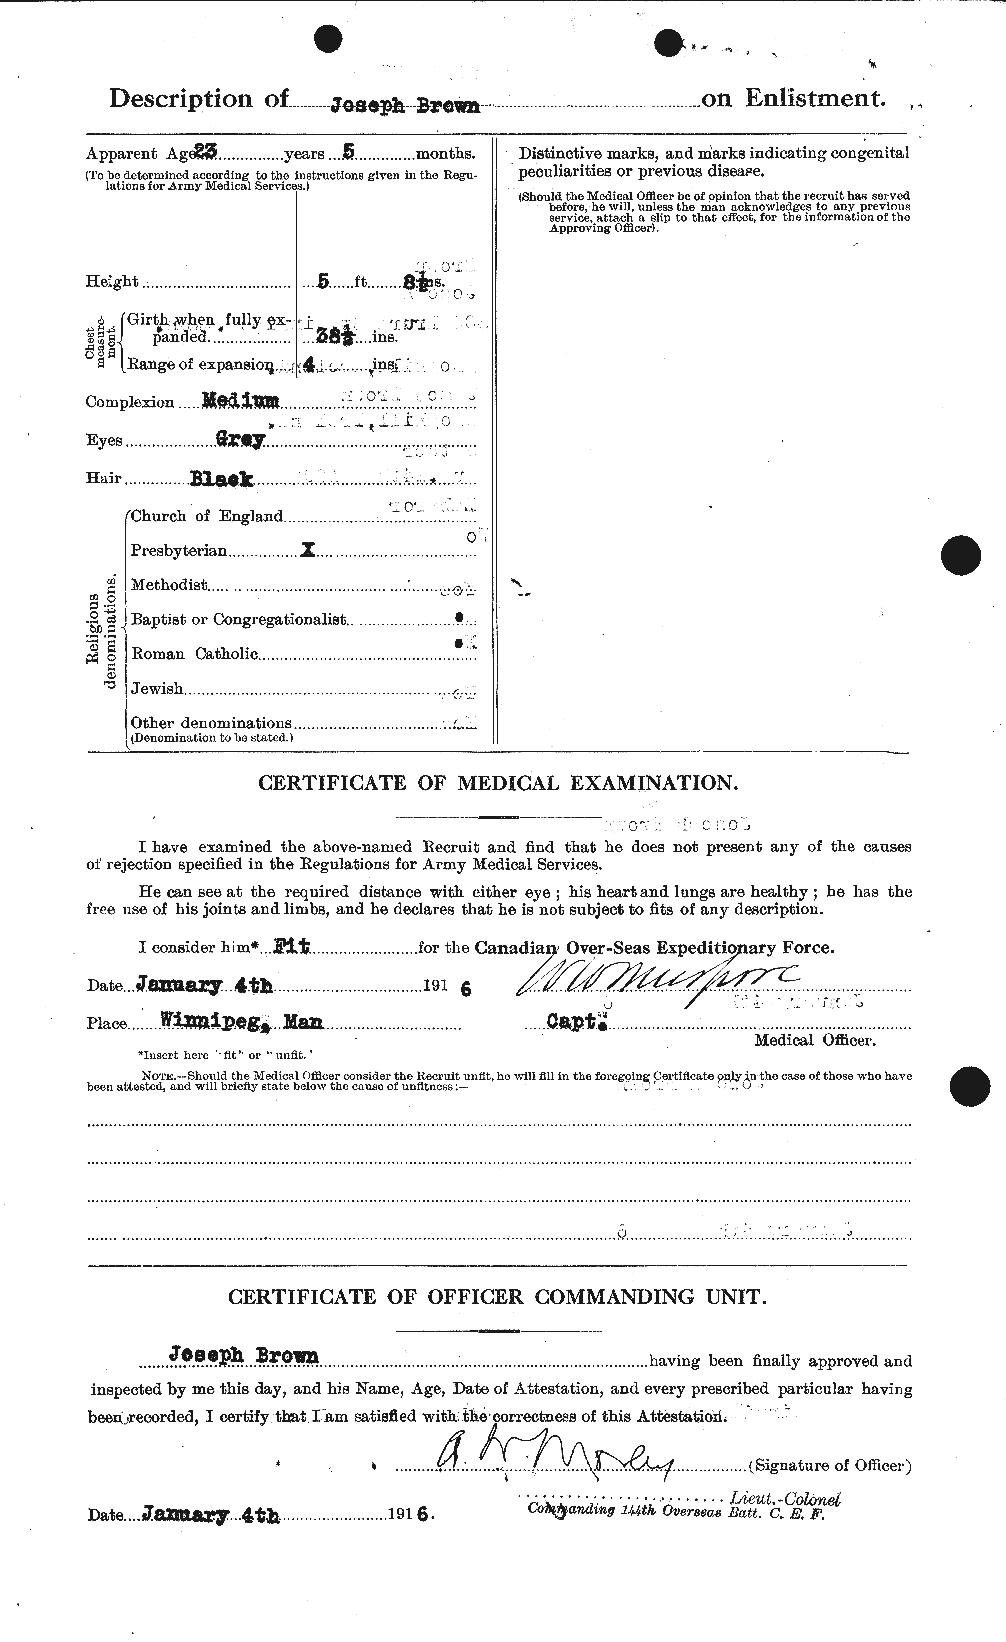 Dossiers du Personnel de la Première Guerre mondiale - CEC 265927b